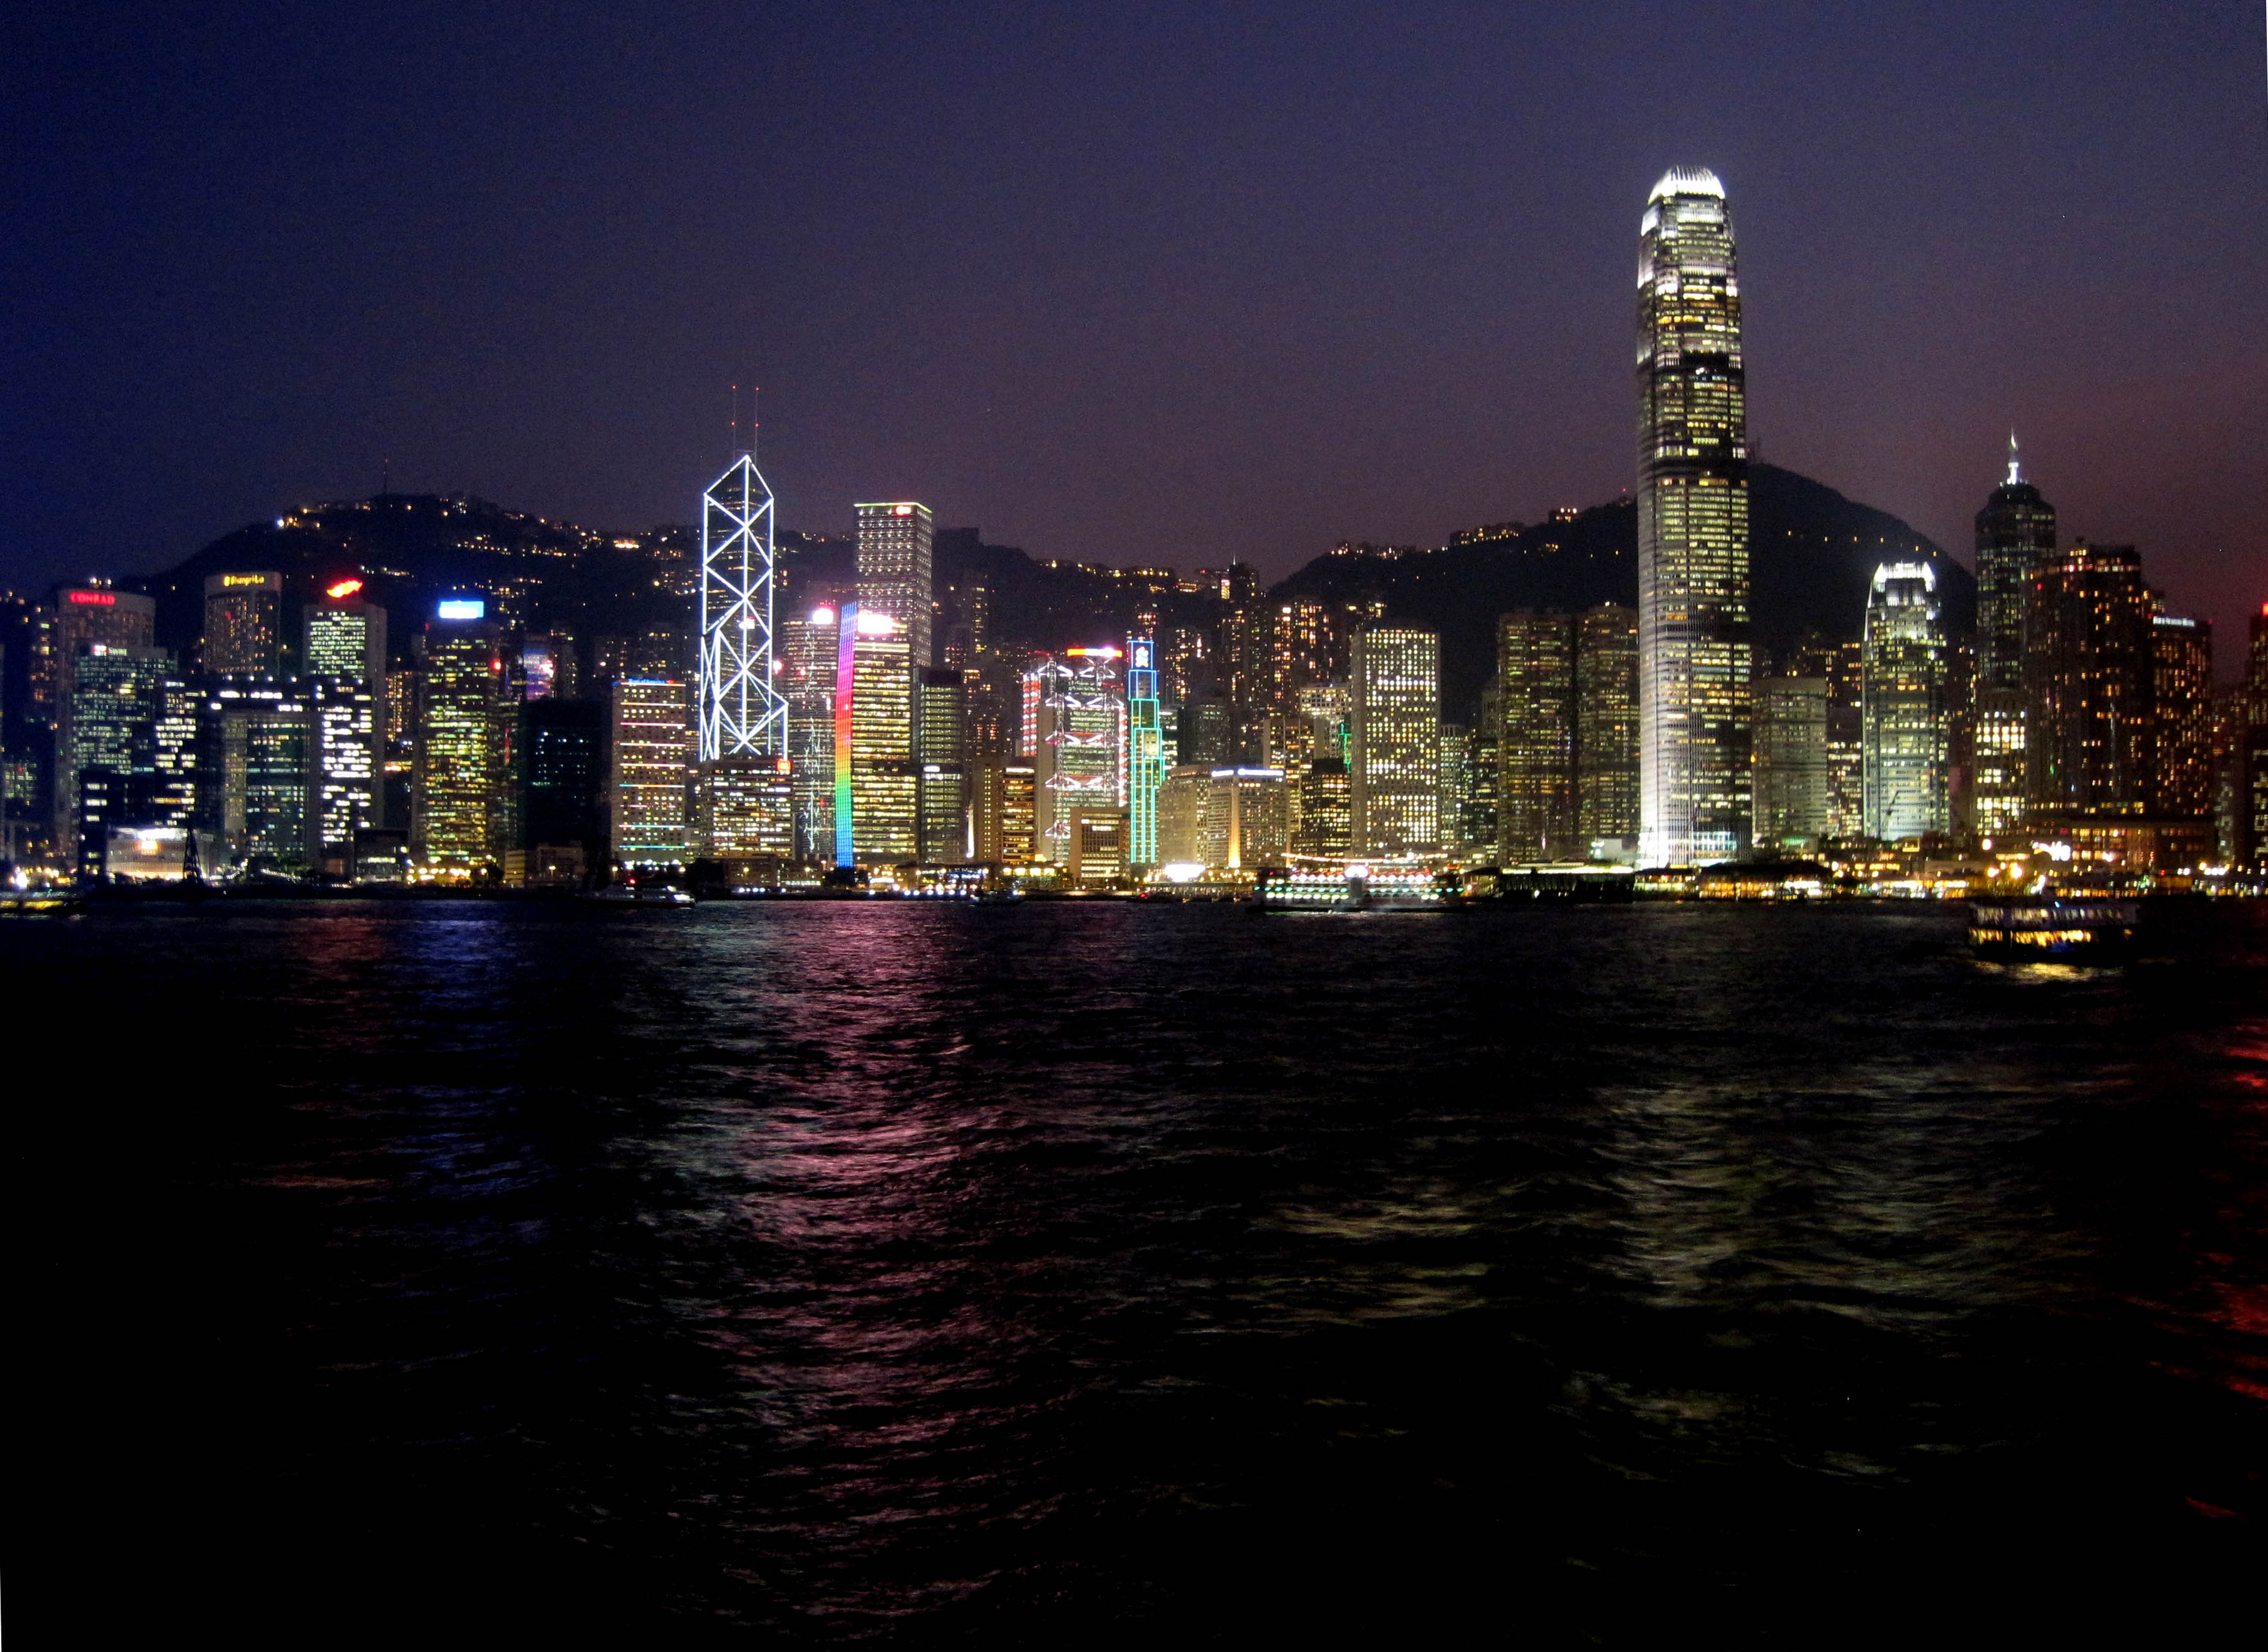 Hong Kong (photo credit: dbrooker1/flickr)